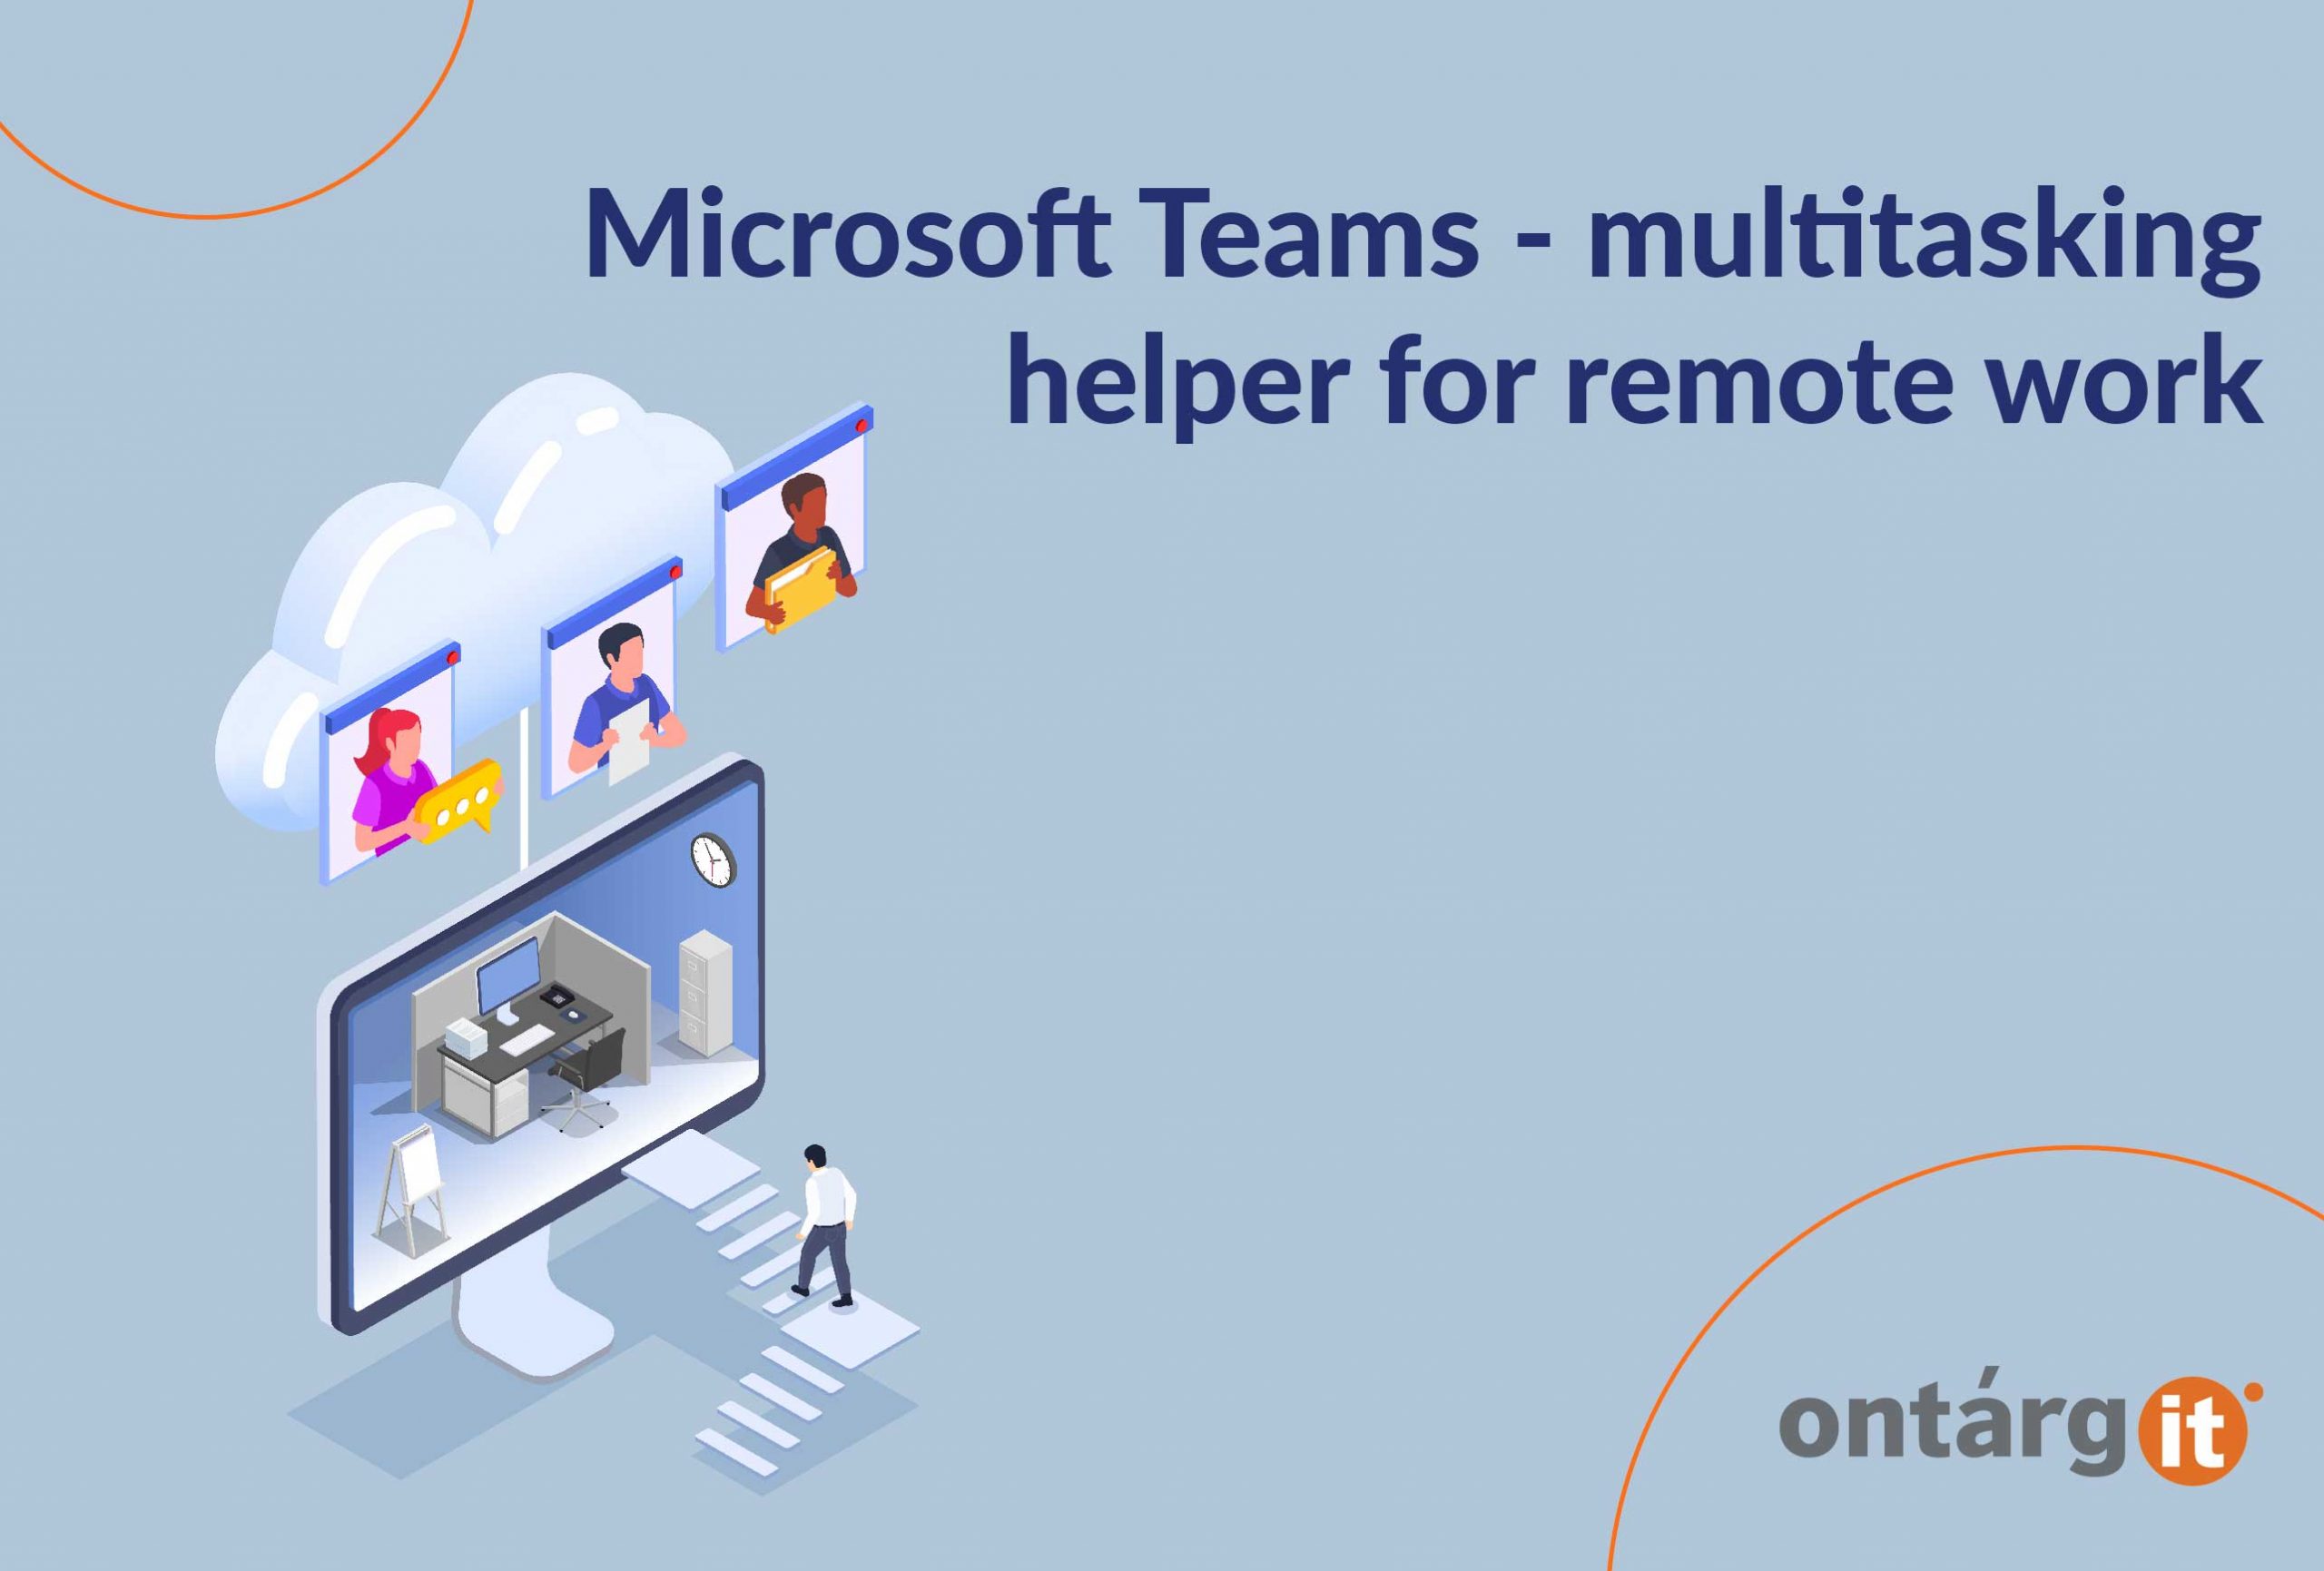 Microsoft Teams - multitasking helper for remote work